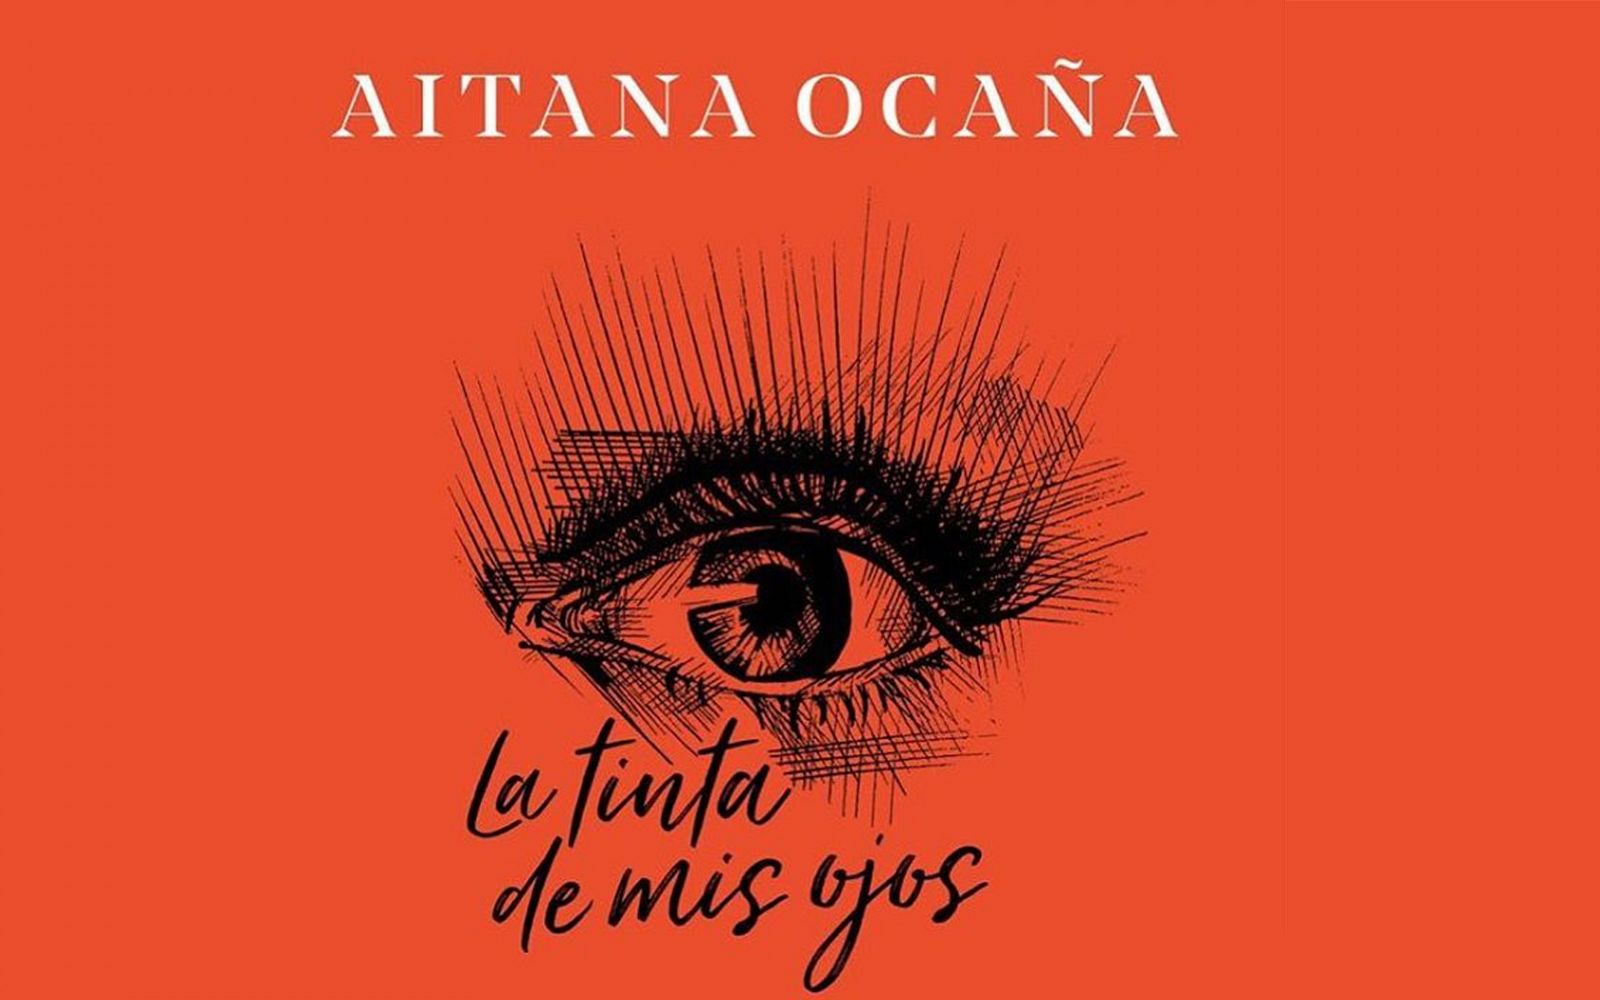 Portada de "La tinta de mis ojos", el primer libro de Aitana